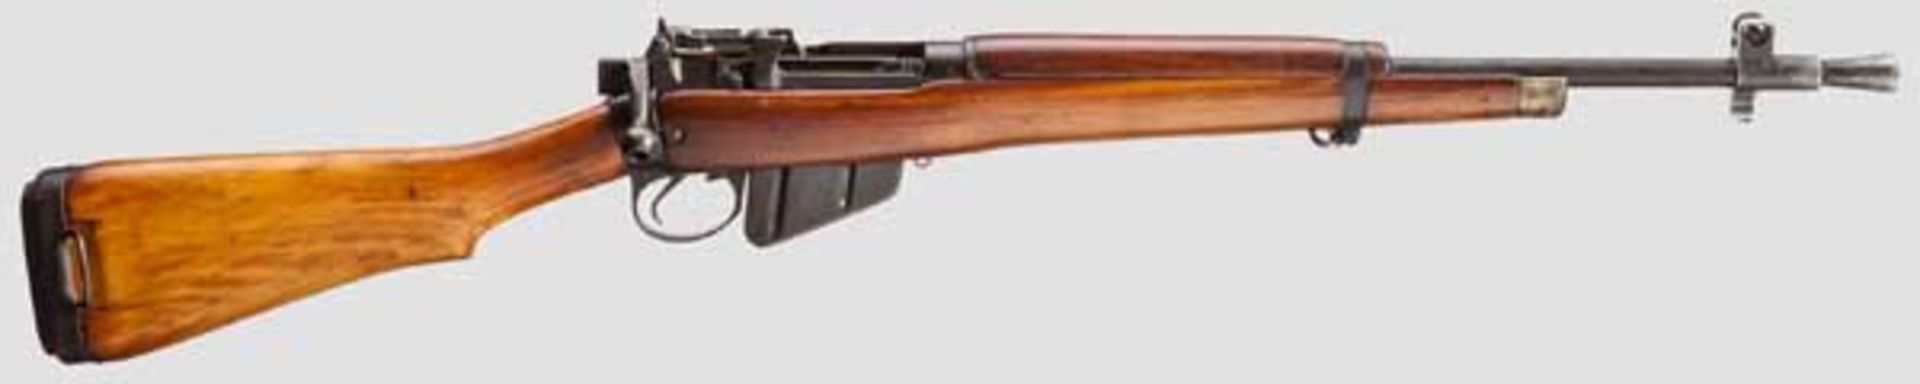 Enfield No. 5 Mk I, "Jungle Carbine" Kal. .303 brit., Nr. V970. Nummerngleich bis auf Schloss und